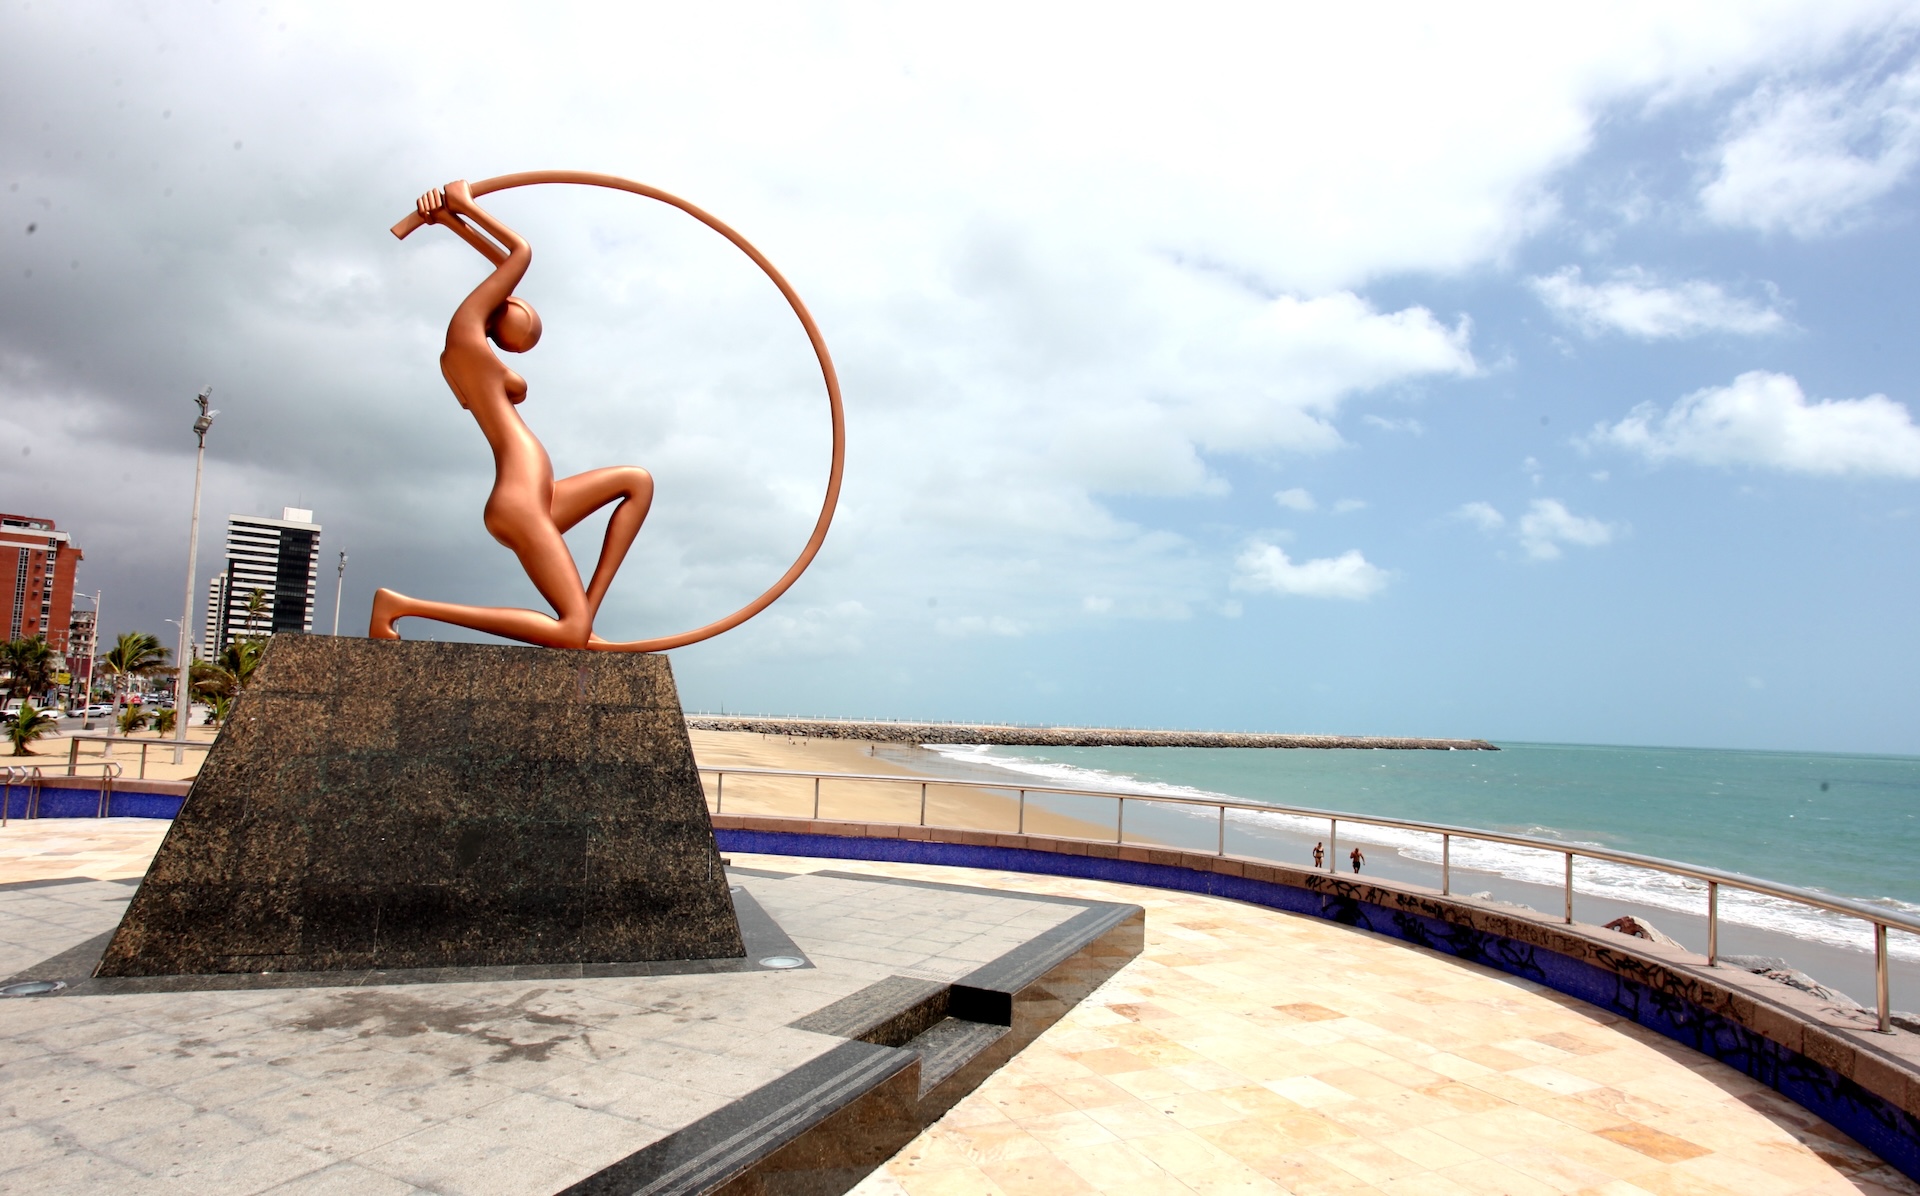 A Estátua de Iracema Guardiã é uma criação do artista cearense Zenon da Cunha Mendes Barreto, em homenagem à literatura do também cearense José de Alencar. A estátua, inaugurada em 1995, está localizada na Praia de Iracema. (Foto: Divulgação/SetFor)